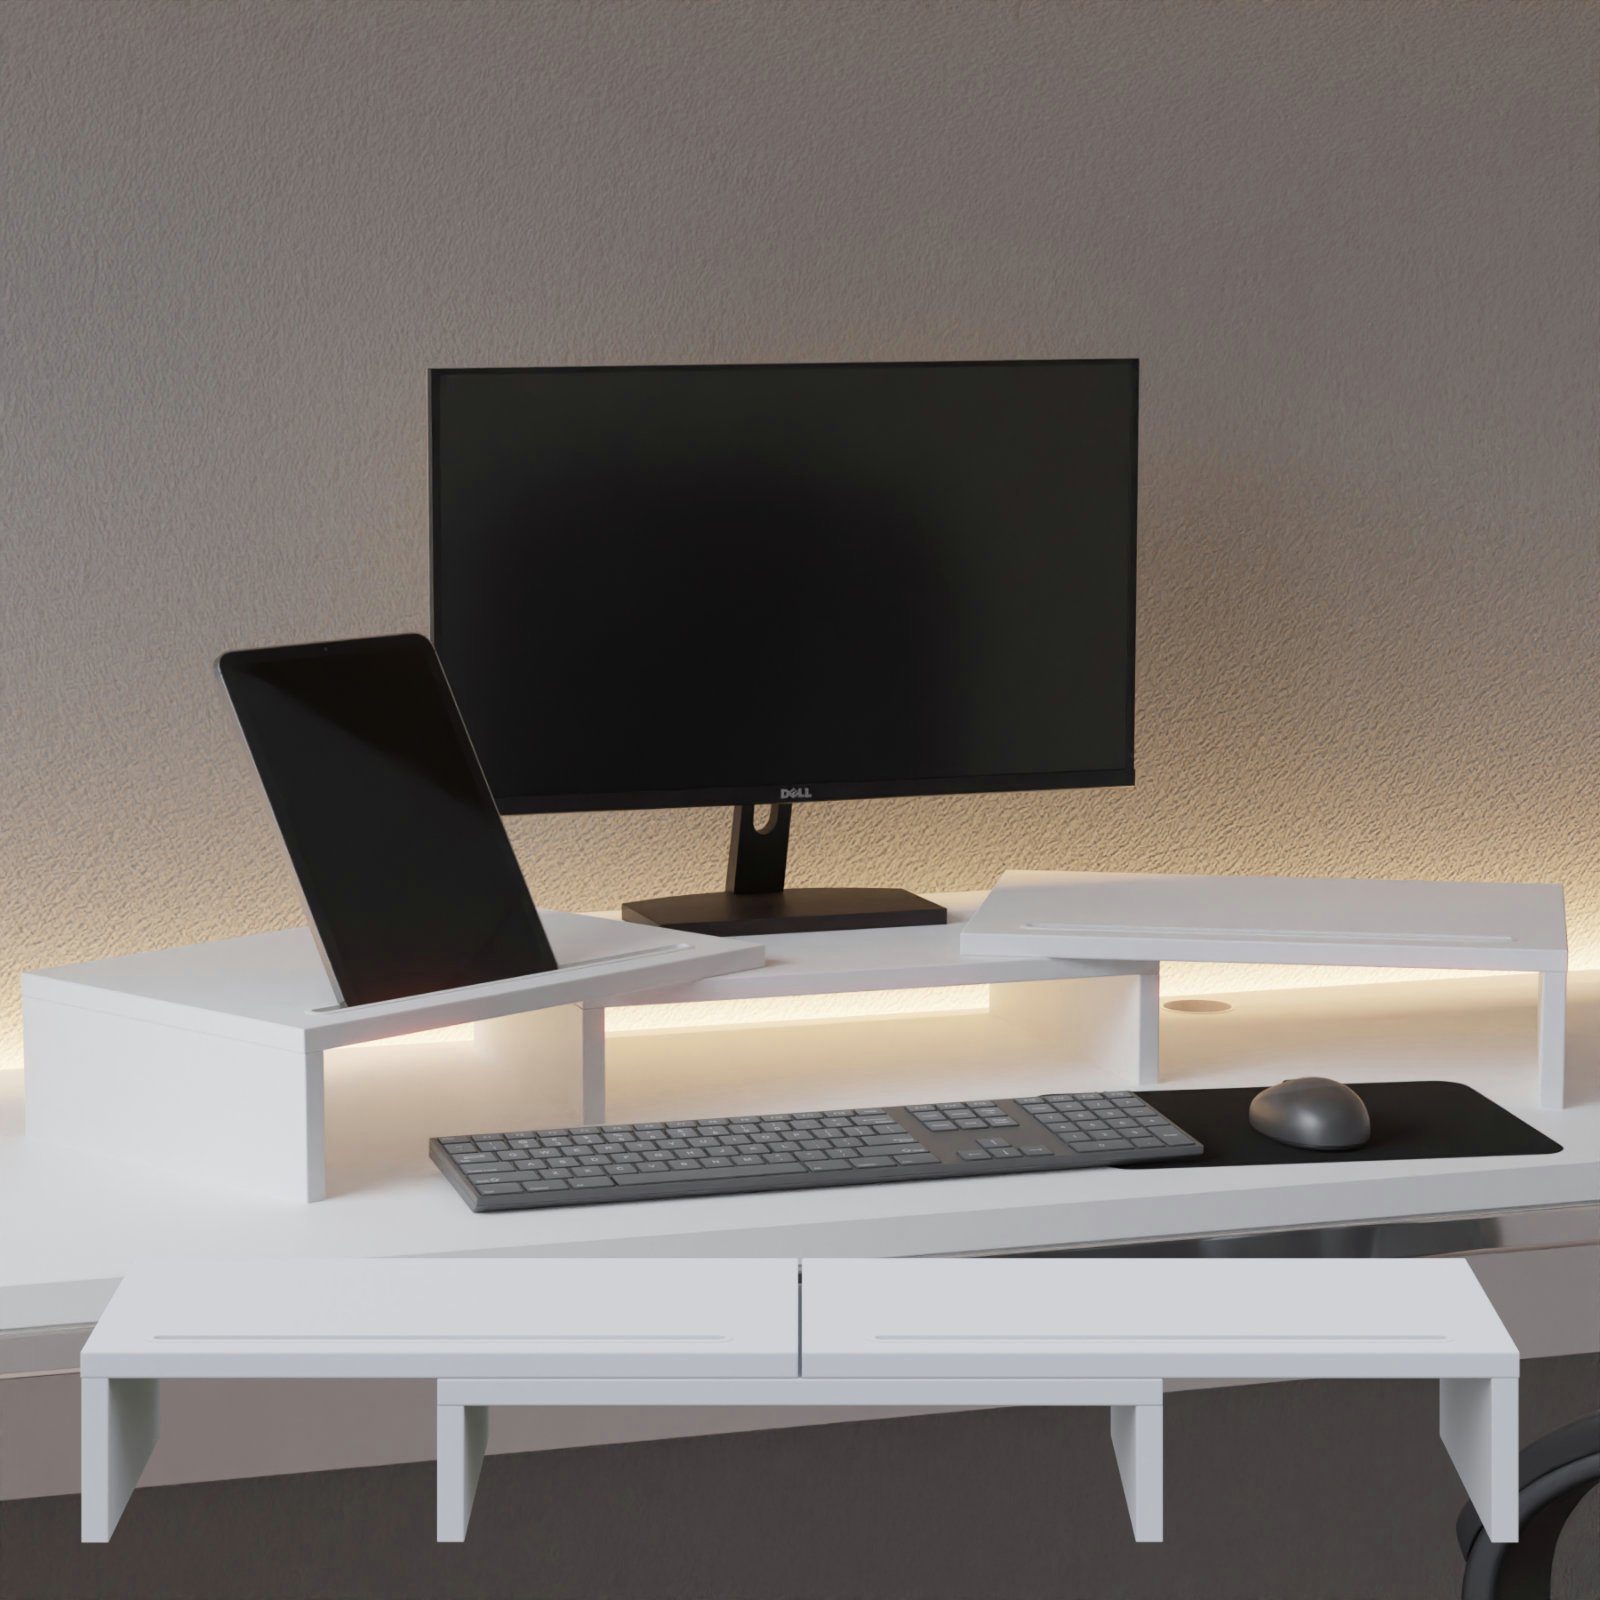 Set Unterbau Schreibtischaufsatz Auflage HAGO Monitorständer 3-tlg. Tischhalterung weiß drehbar